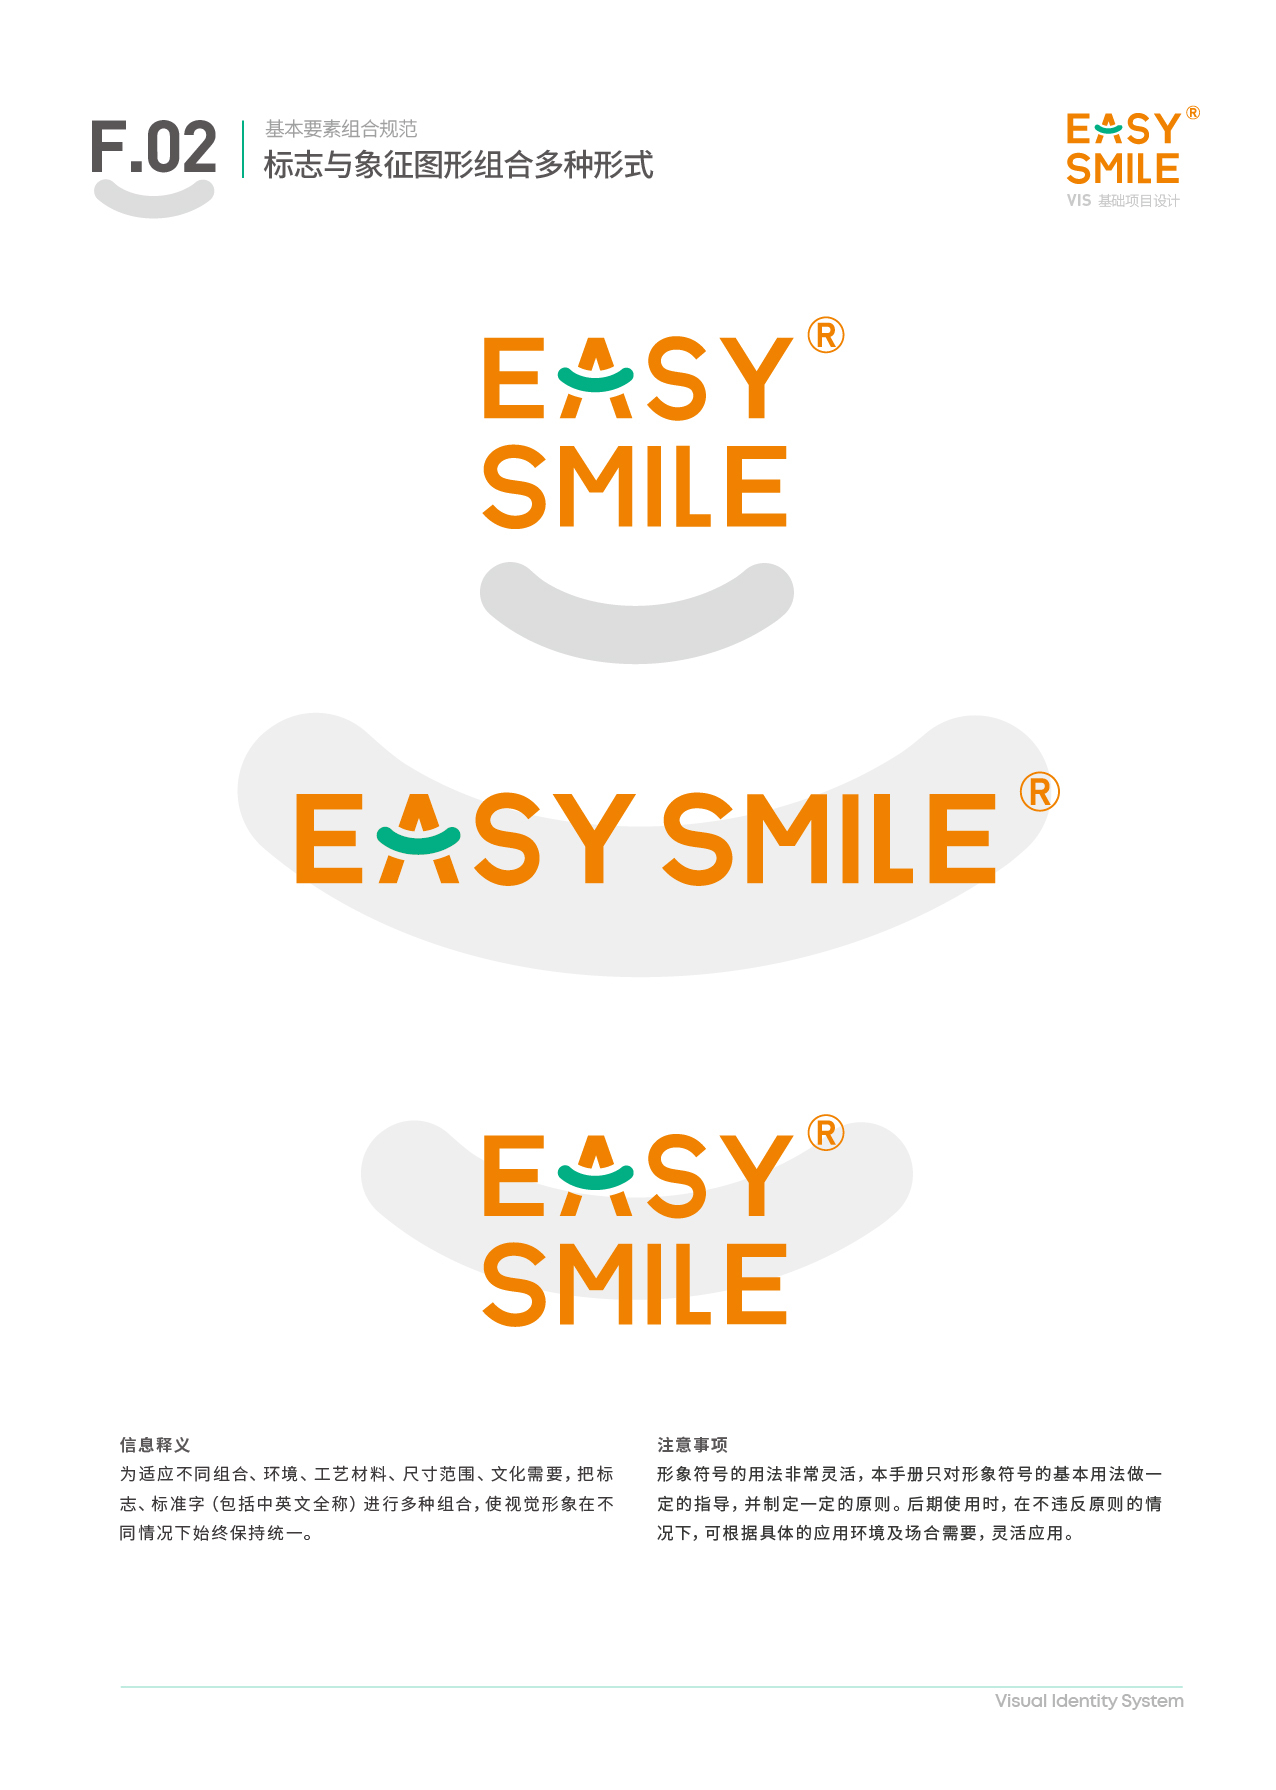 Easysmile 轻松笑品牌VIS图30